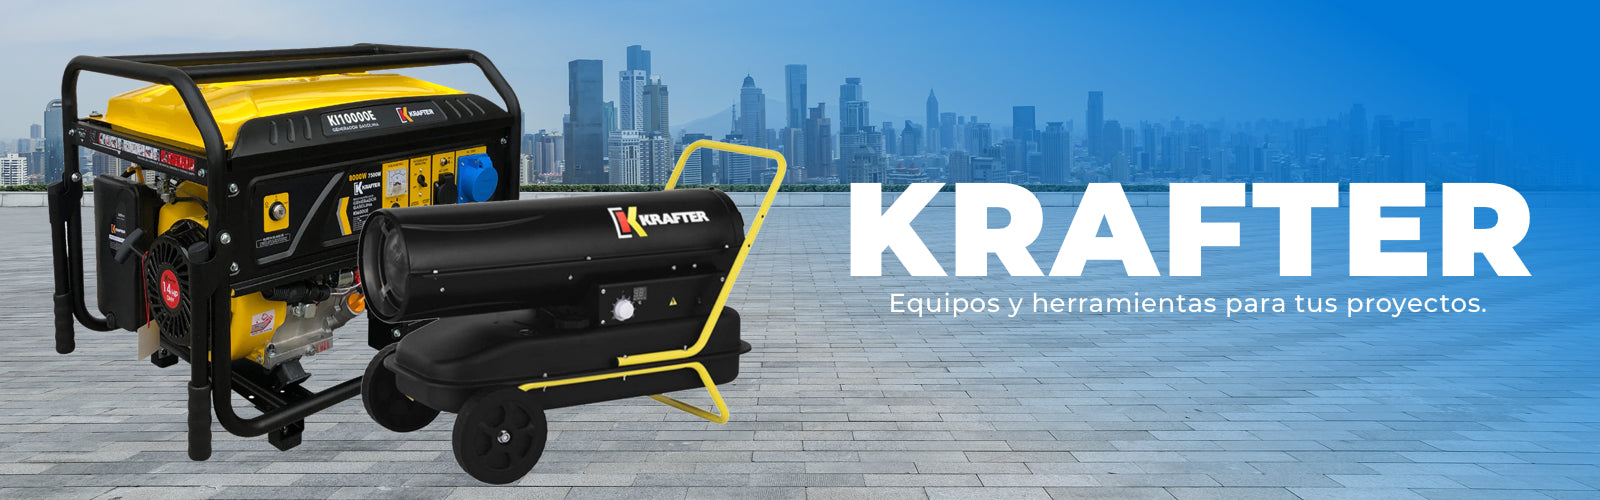 Generador Gasolina Inverter KRAFTER KR-3750iD - Generadores, Generadores  Gasolina, Krafter en Emaresa